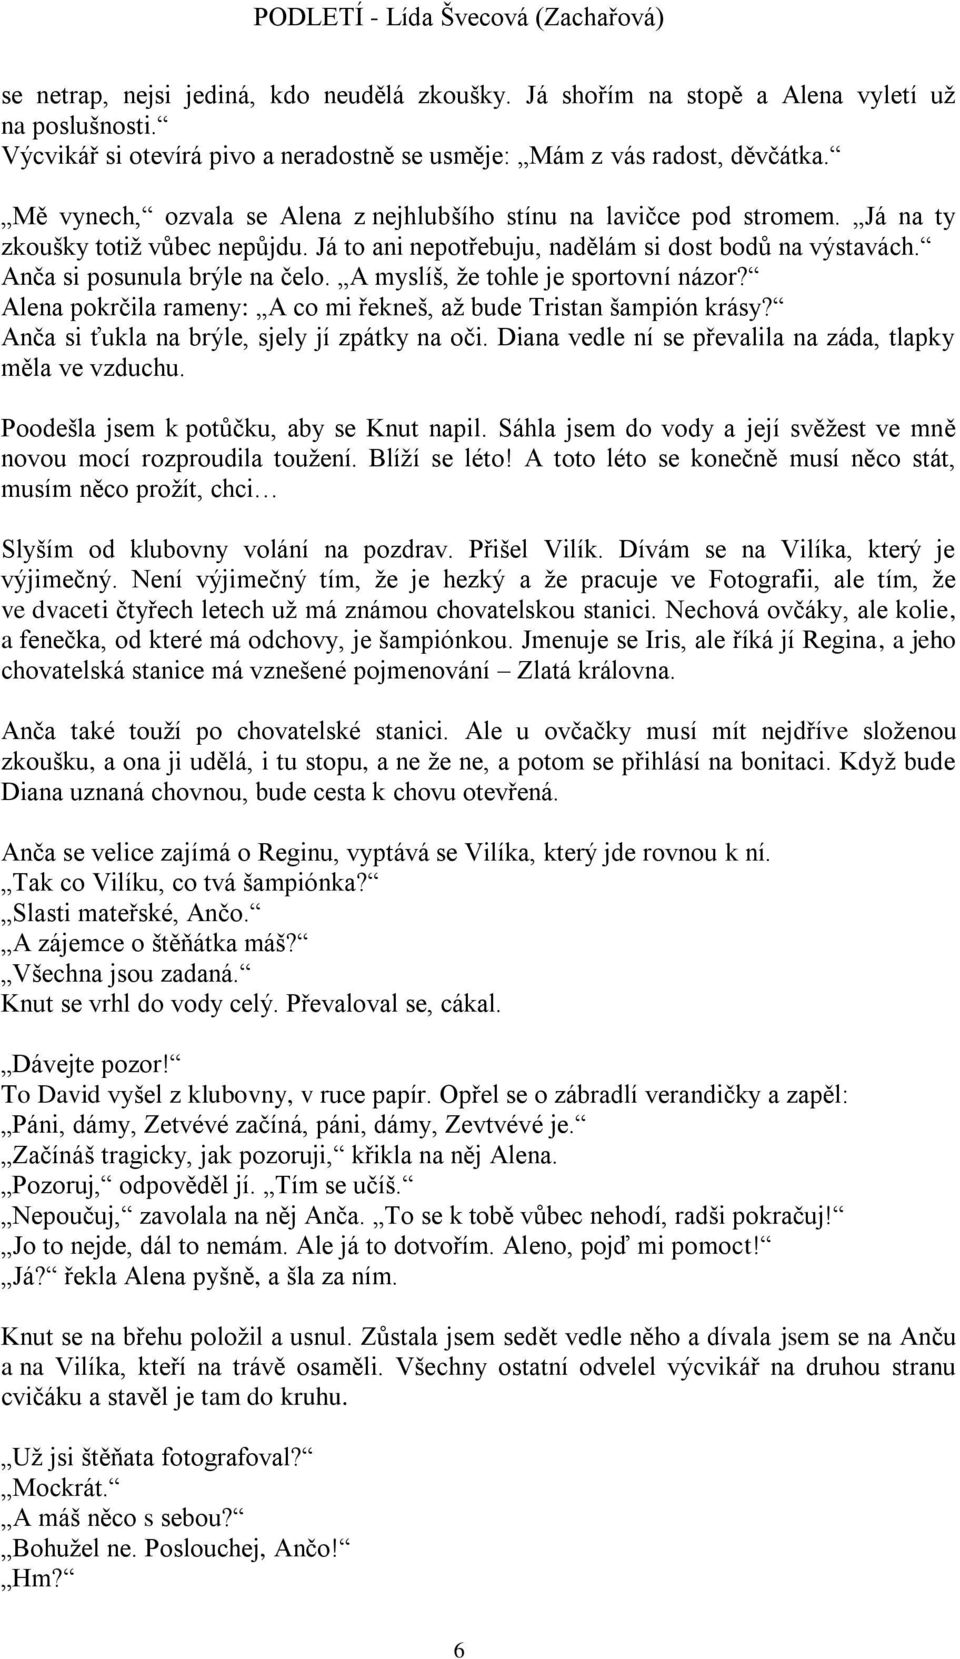 PODLETÍ - Lída Švecová (Zachařová) - PDF Stažení zdarma